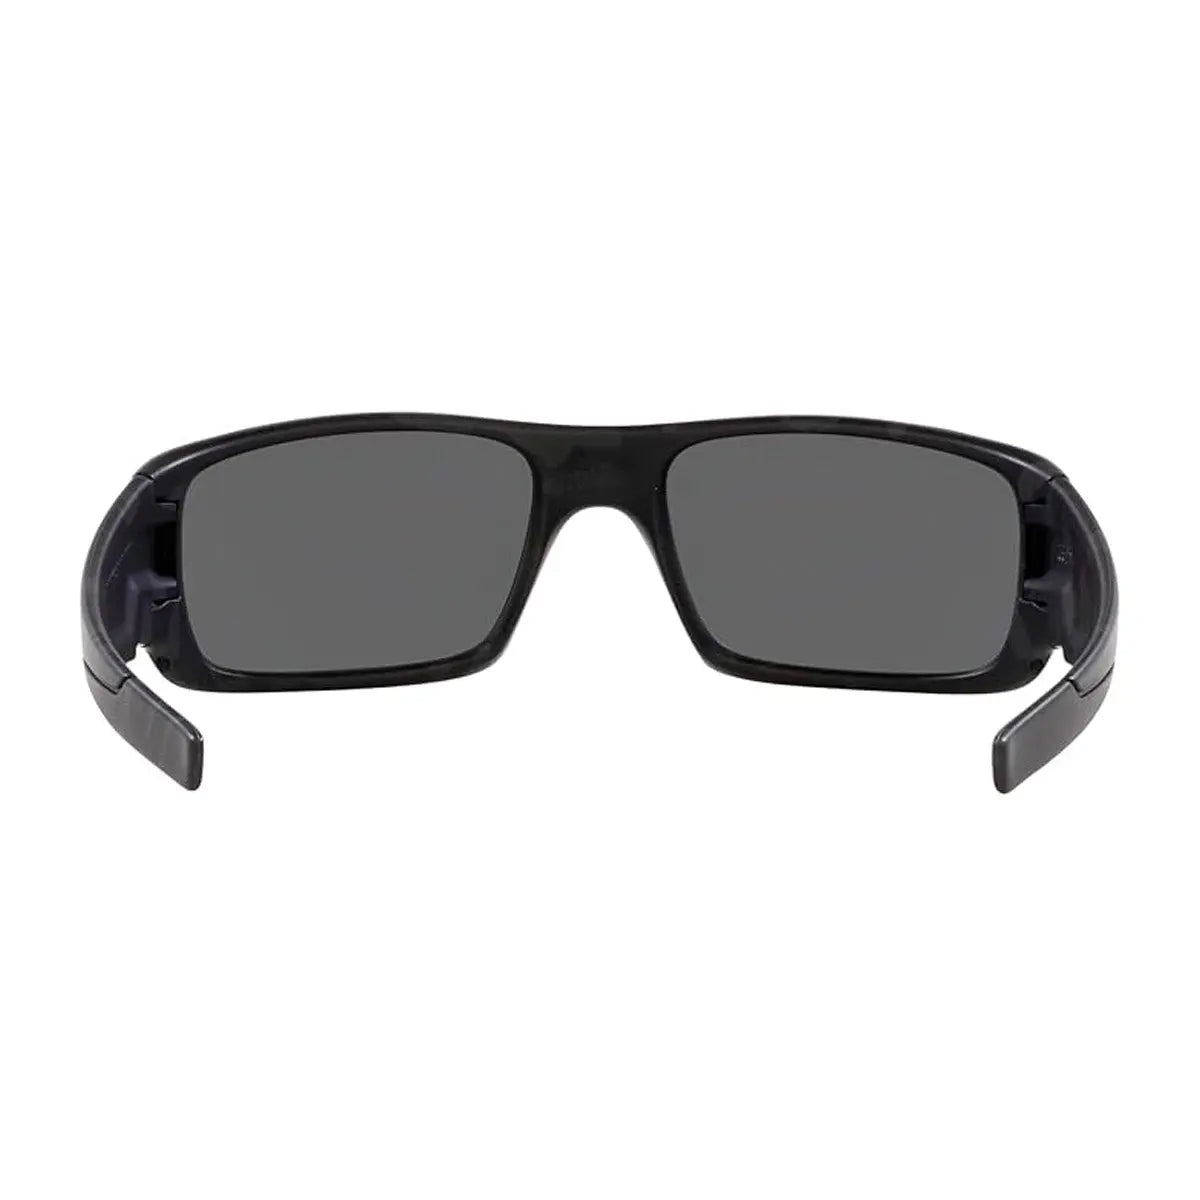 Oakley Men's Crankshaft Sunglasses